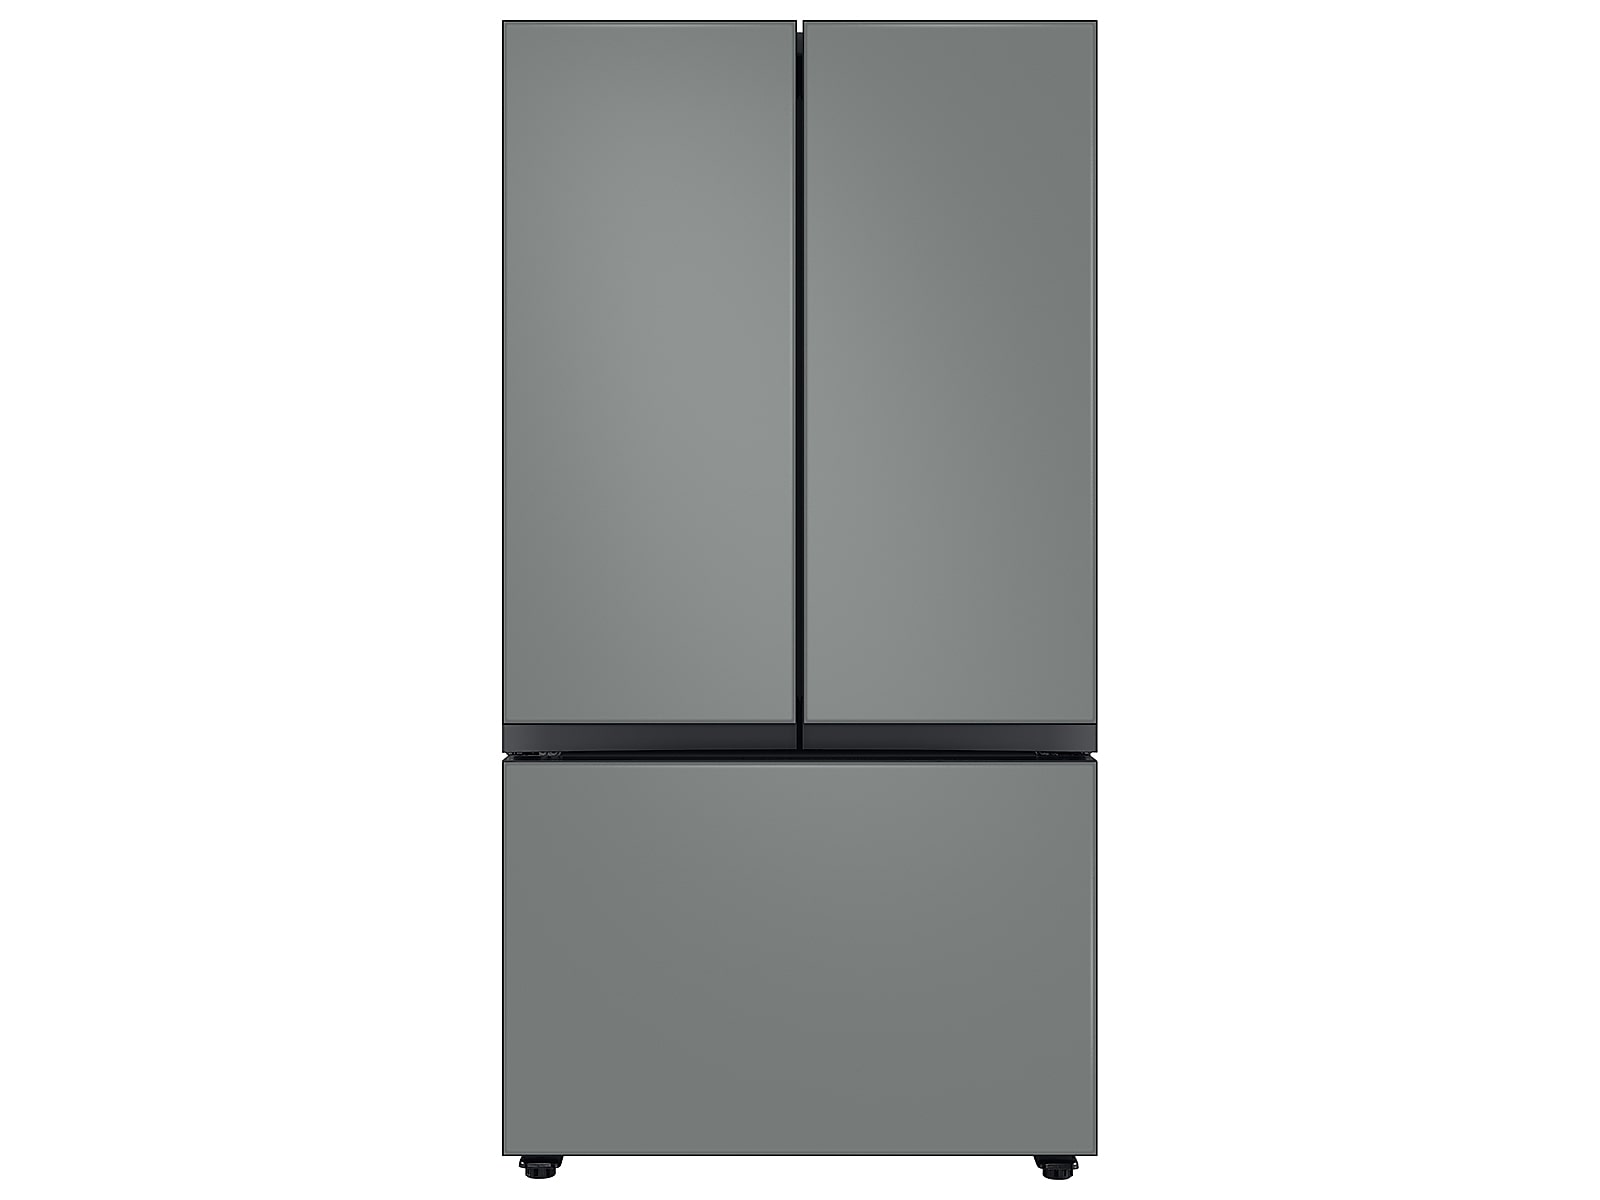 Samsung Bespoke 3-Door French Door Refrigerator (24 cu. ft.) with Beverage Center™ in Grey Glass(BNDL-1650312137858)